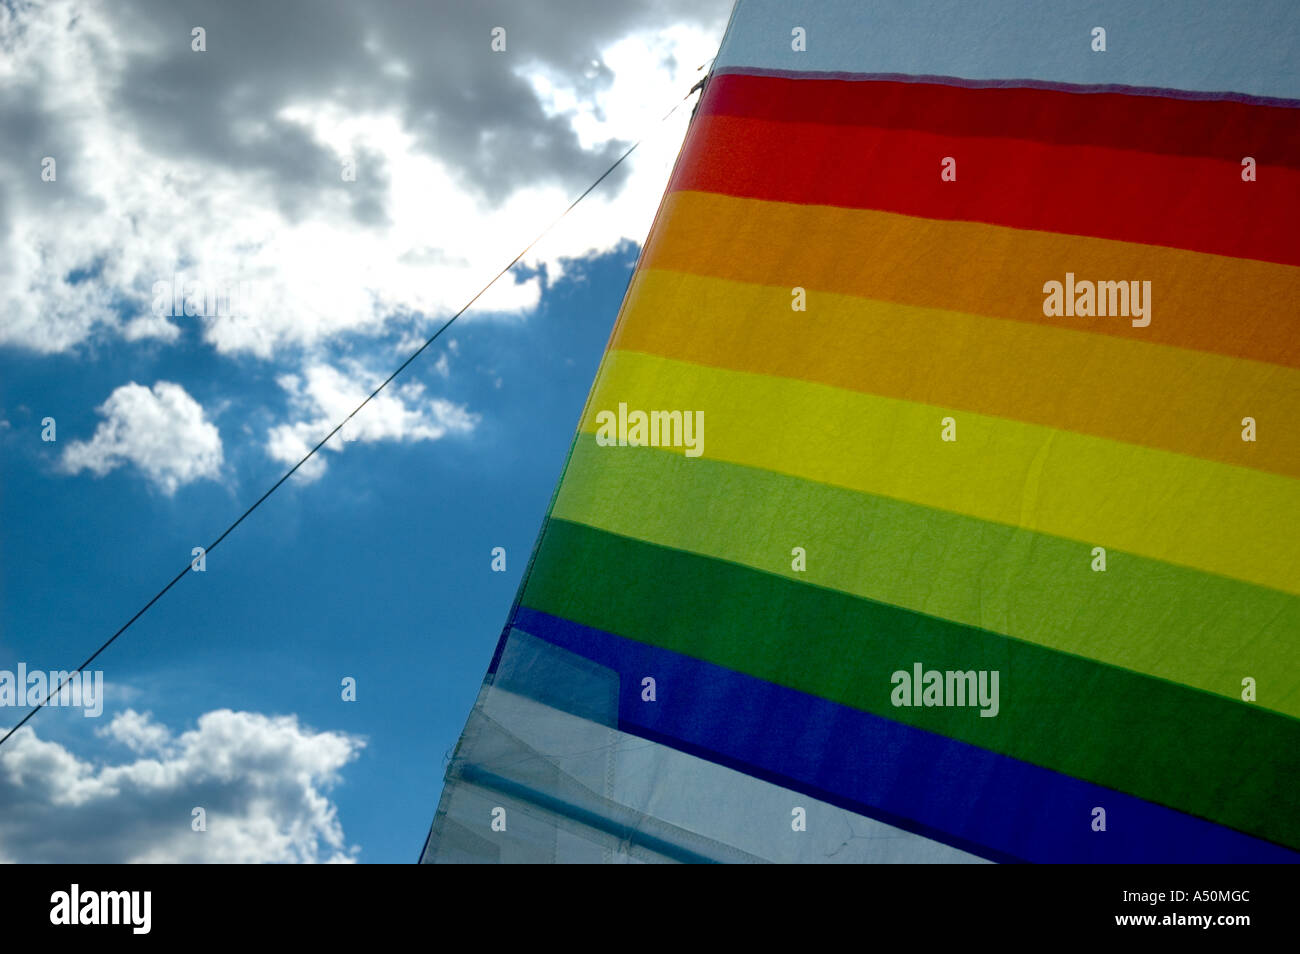 Voile arc-en-ciel sur un voilier placé contre un ciel bleu brillant et des  nuages - haute en couleur sur un canot LGBTQ / LGBT gay Pride Photo Stock -  Alamy